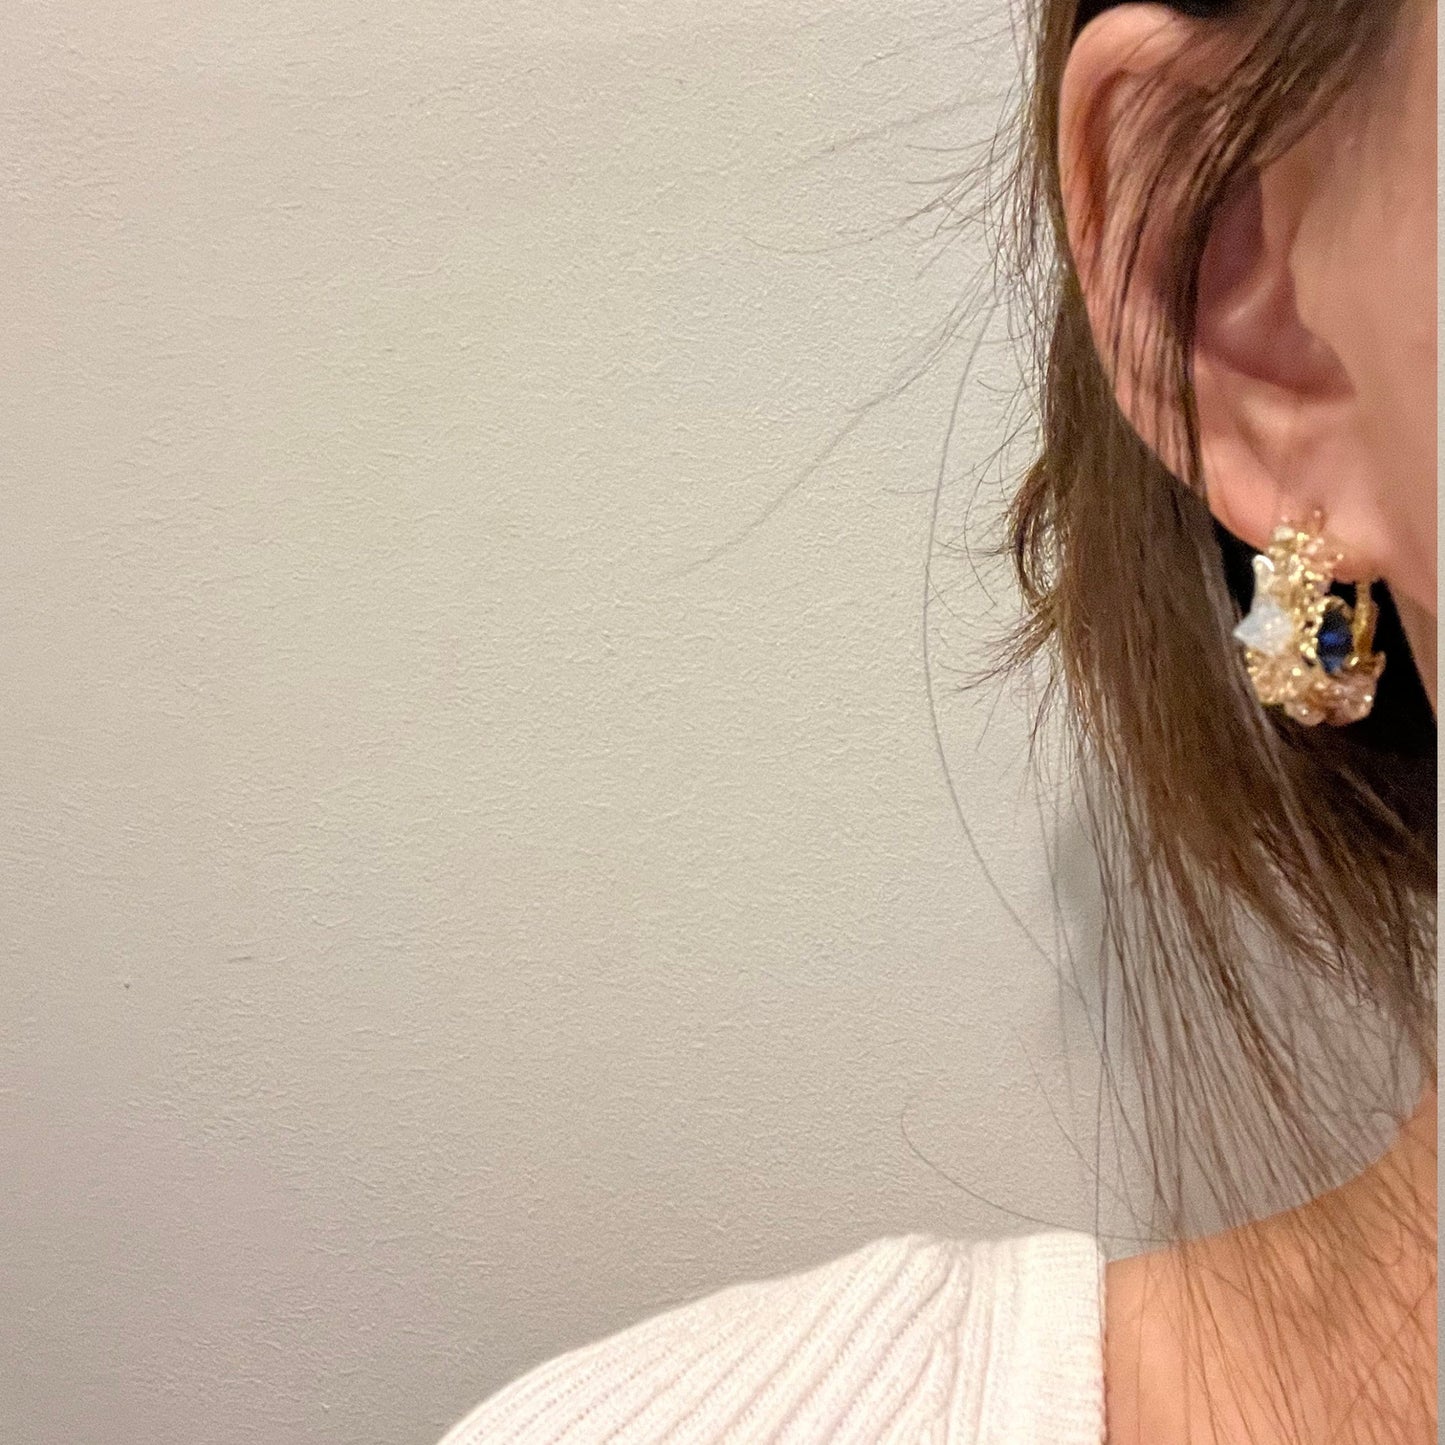 Flower Hoop Earrings, 14K Gold Gemstone Earrings, Cluster Floral Earrings, Dainty Crystal Earrings, Rainbow Hoop Earrings, Handmade Earrings